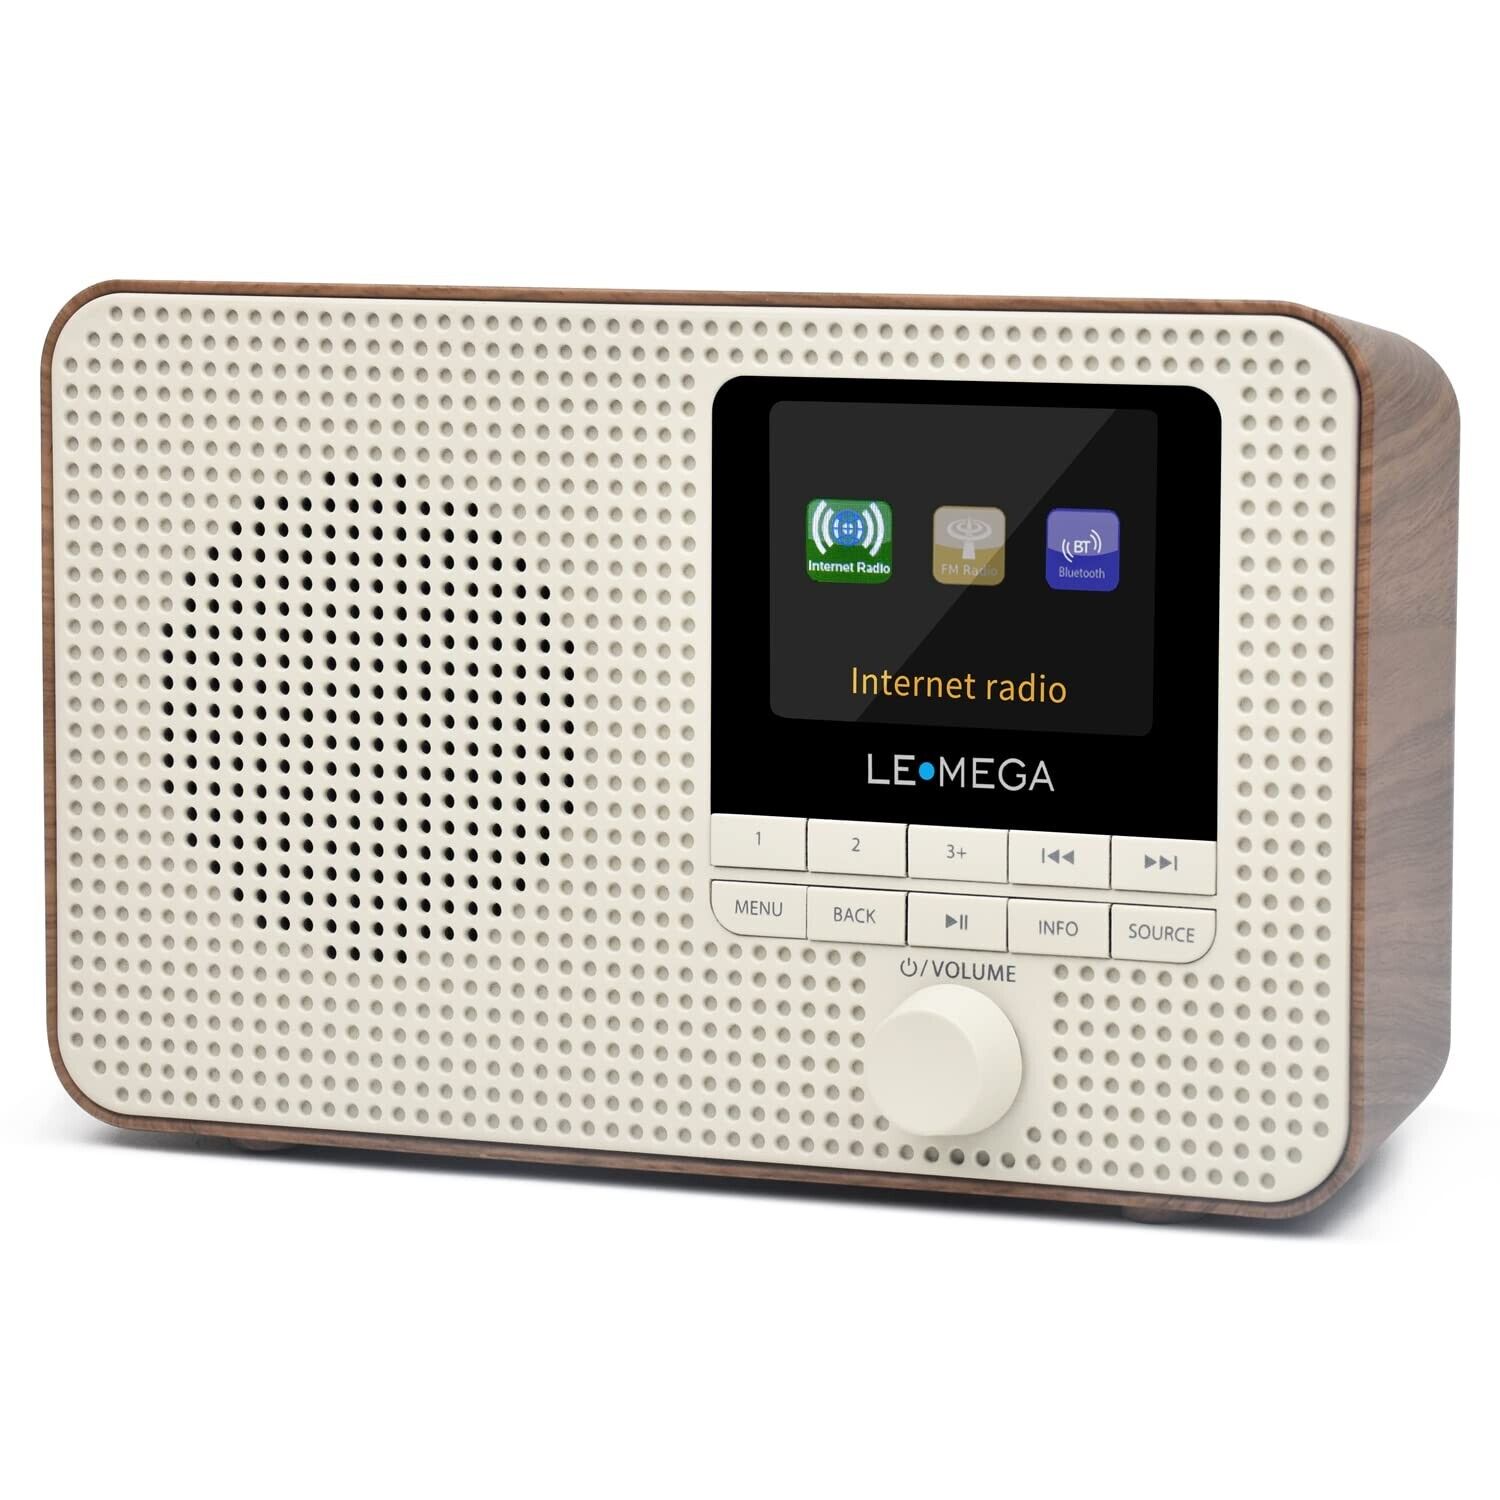 thinkstar Ir1 Portable Wifi Internet Radio, Fm Digital Radio, Bluetooth, Dual Al...